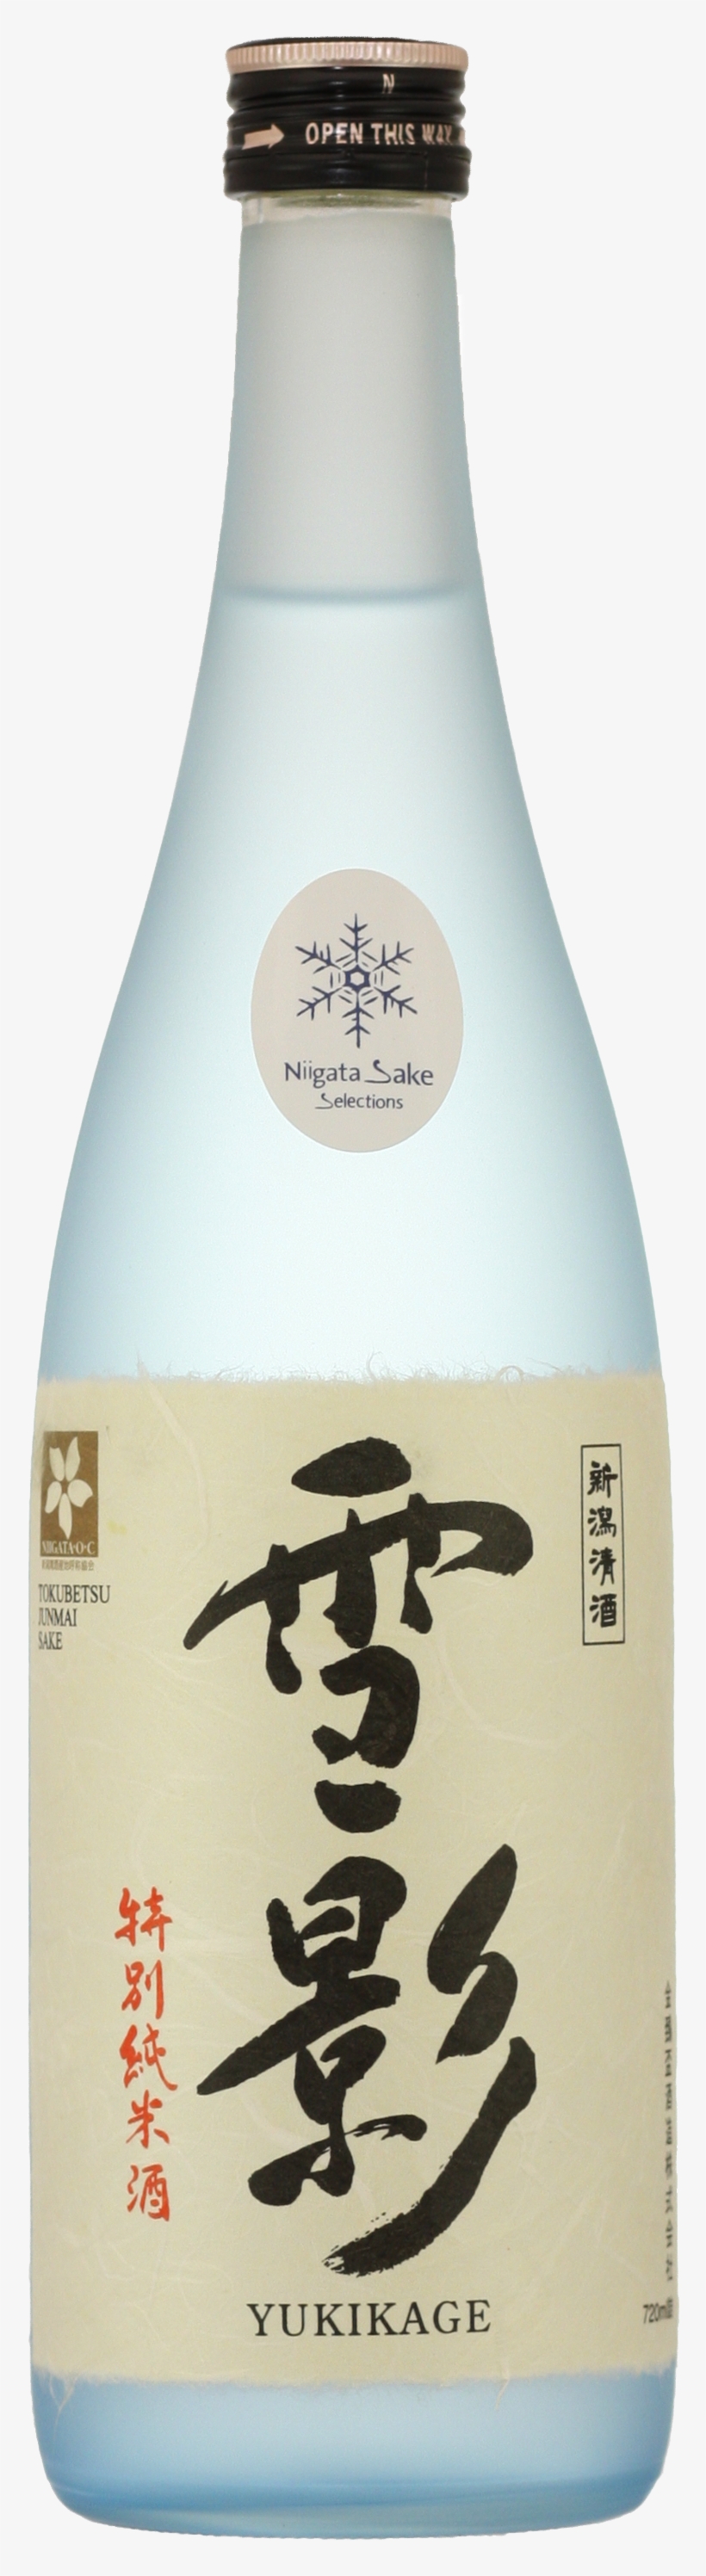 Yukikage Sake Snow Shadow, transparent png #3419713